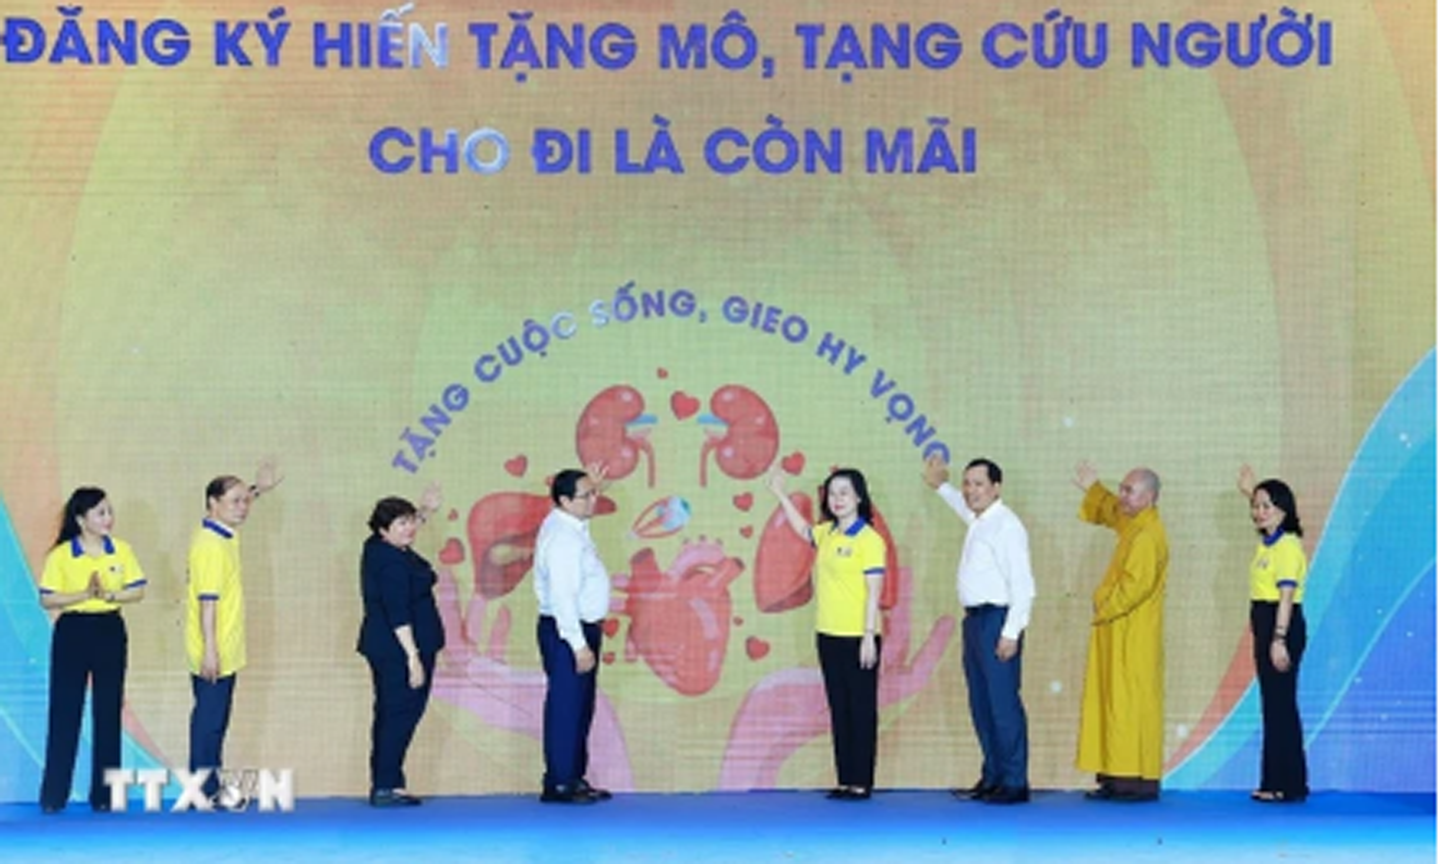 Thủ tướng Phạm Minh Chính và các đại biểu phát động Chương trình Đăng ký hiến tặng mô, tạng-Cho đi là còn mãi. (Ảnh: Dương Giang-TTXVN)